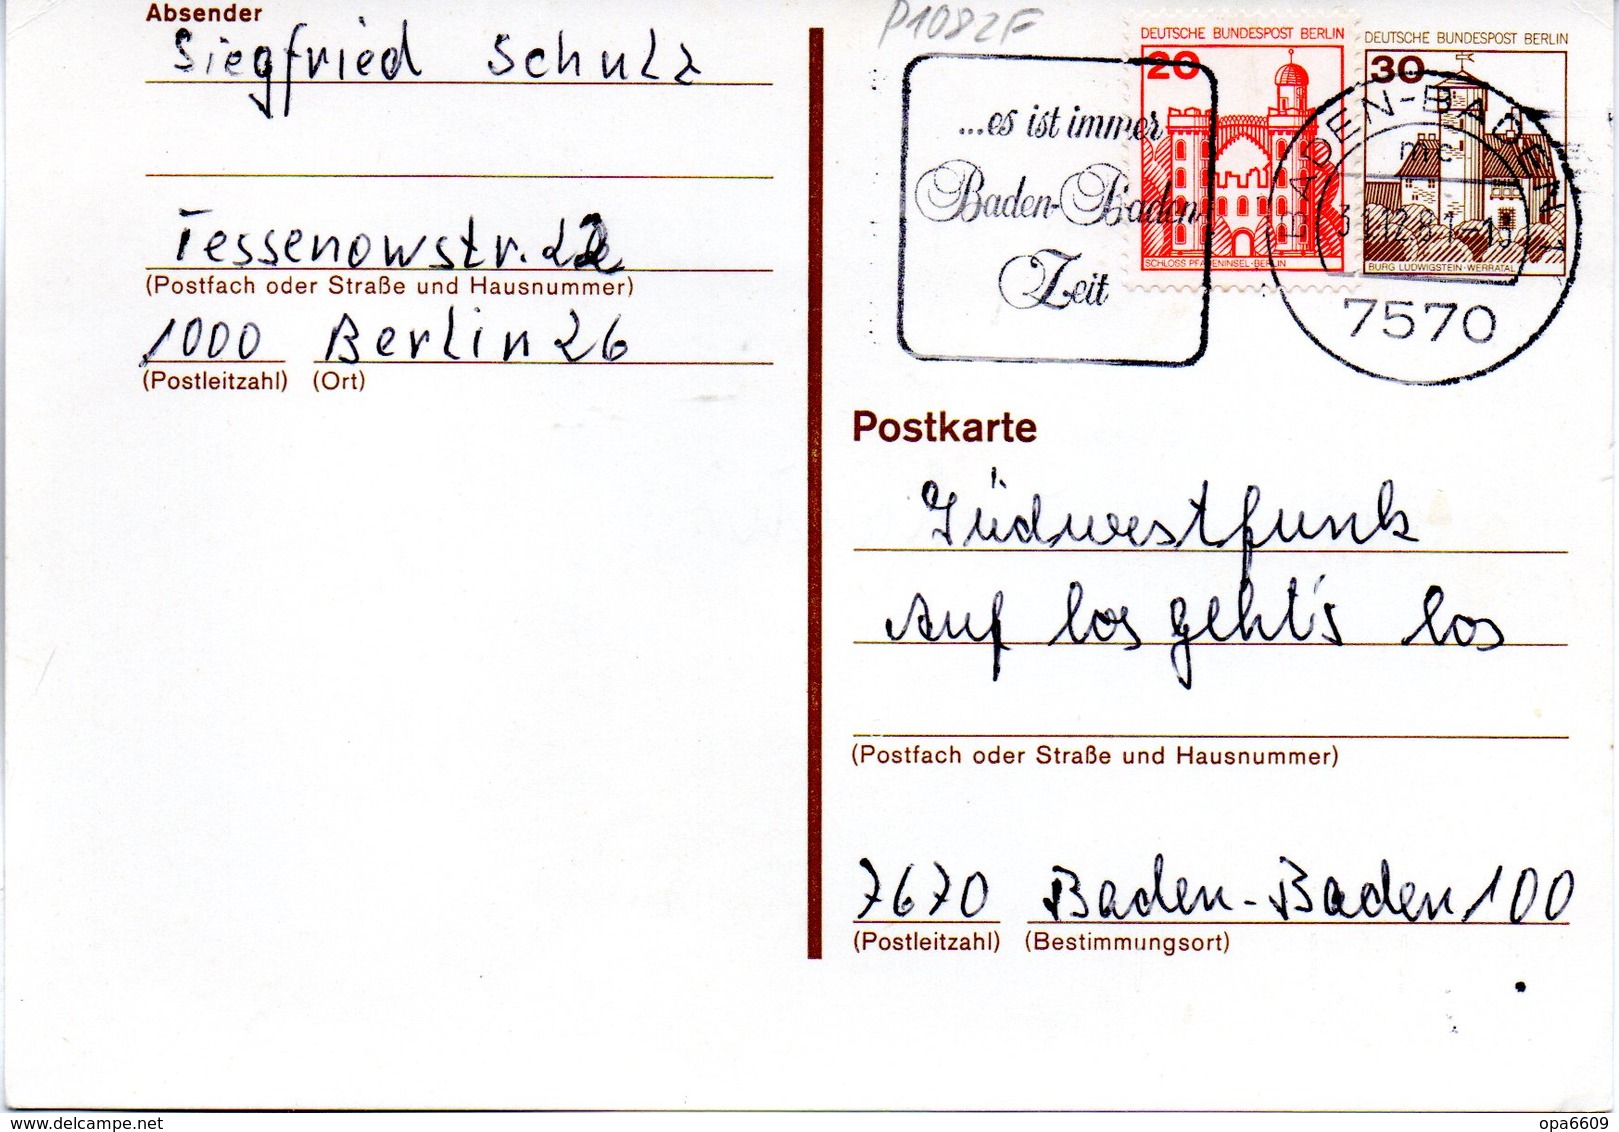 WB Amtliche Ganzsachen-Postkarte P108 ZF Wst."Burgen Und Schlösser"30(Pf) Gelboliv, MWSt 31.12.81 BADEN-BADEN - Postkarten - Gebraucht